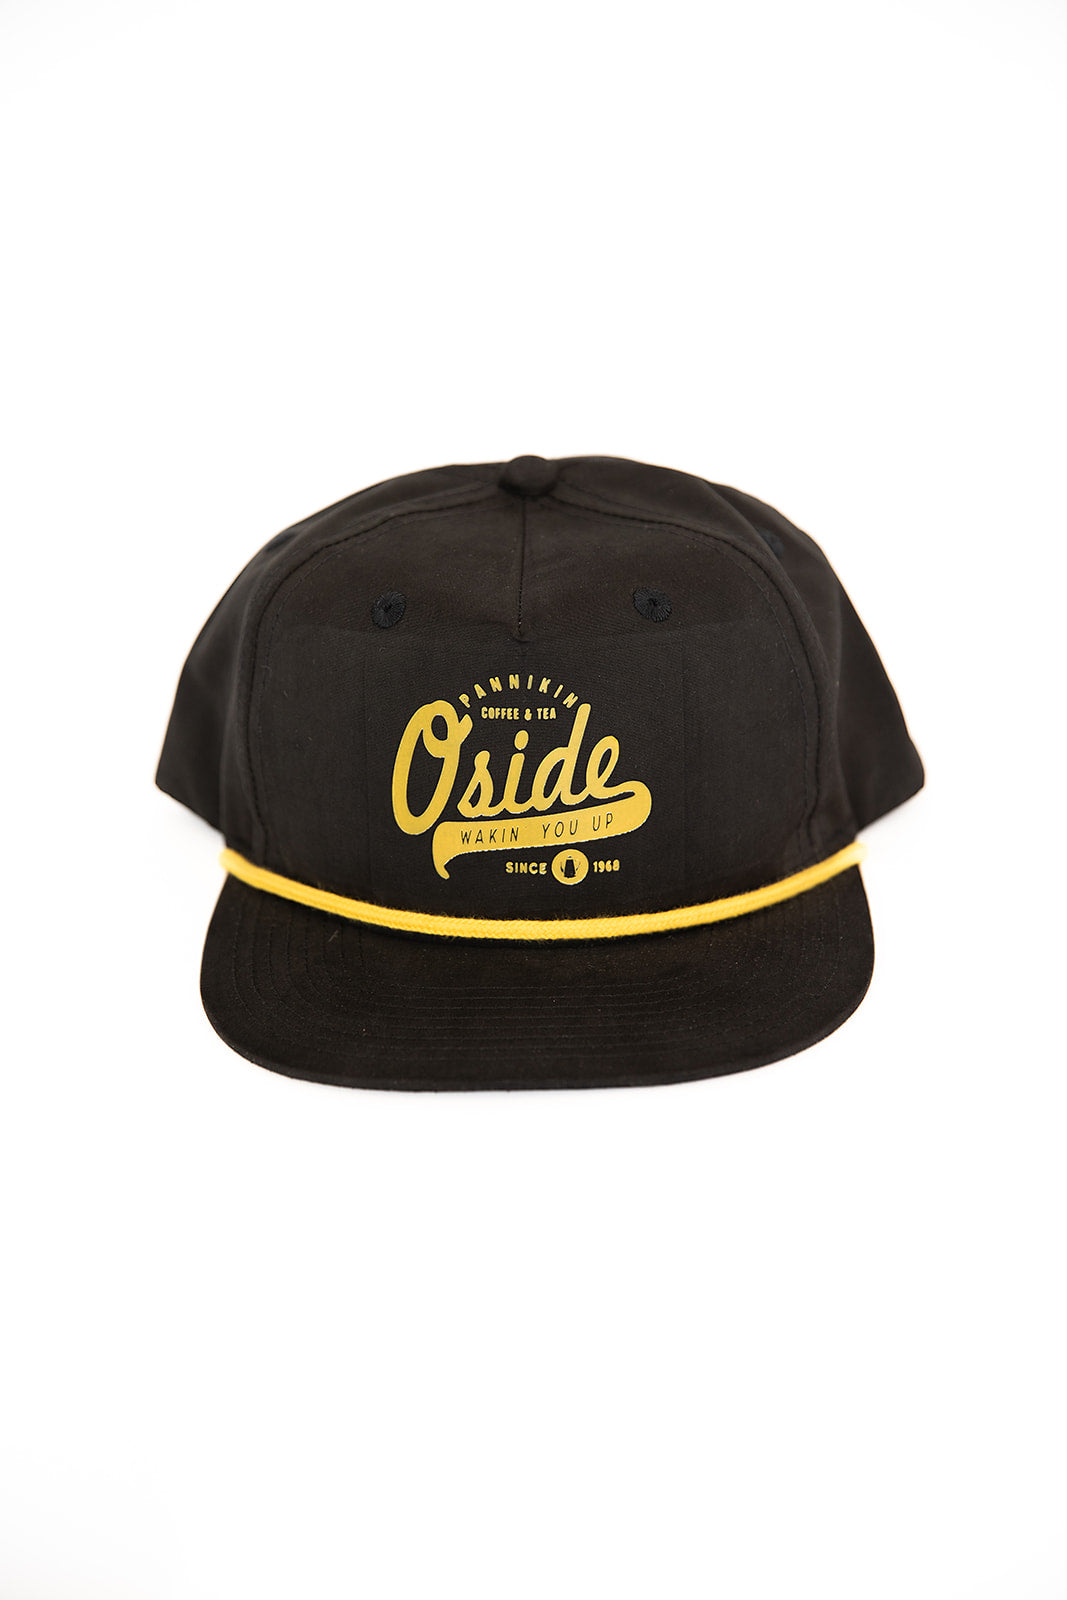 O'Side Trucker Rope Hat